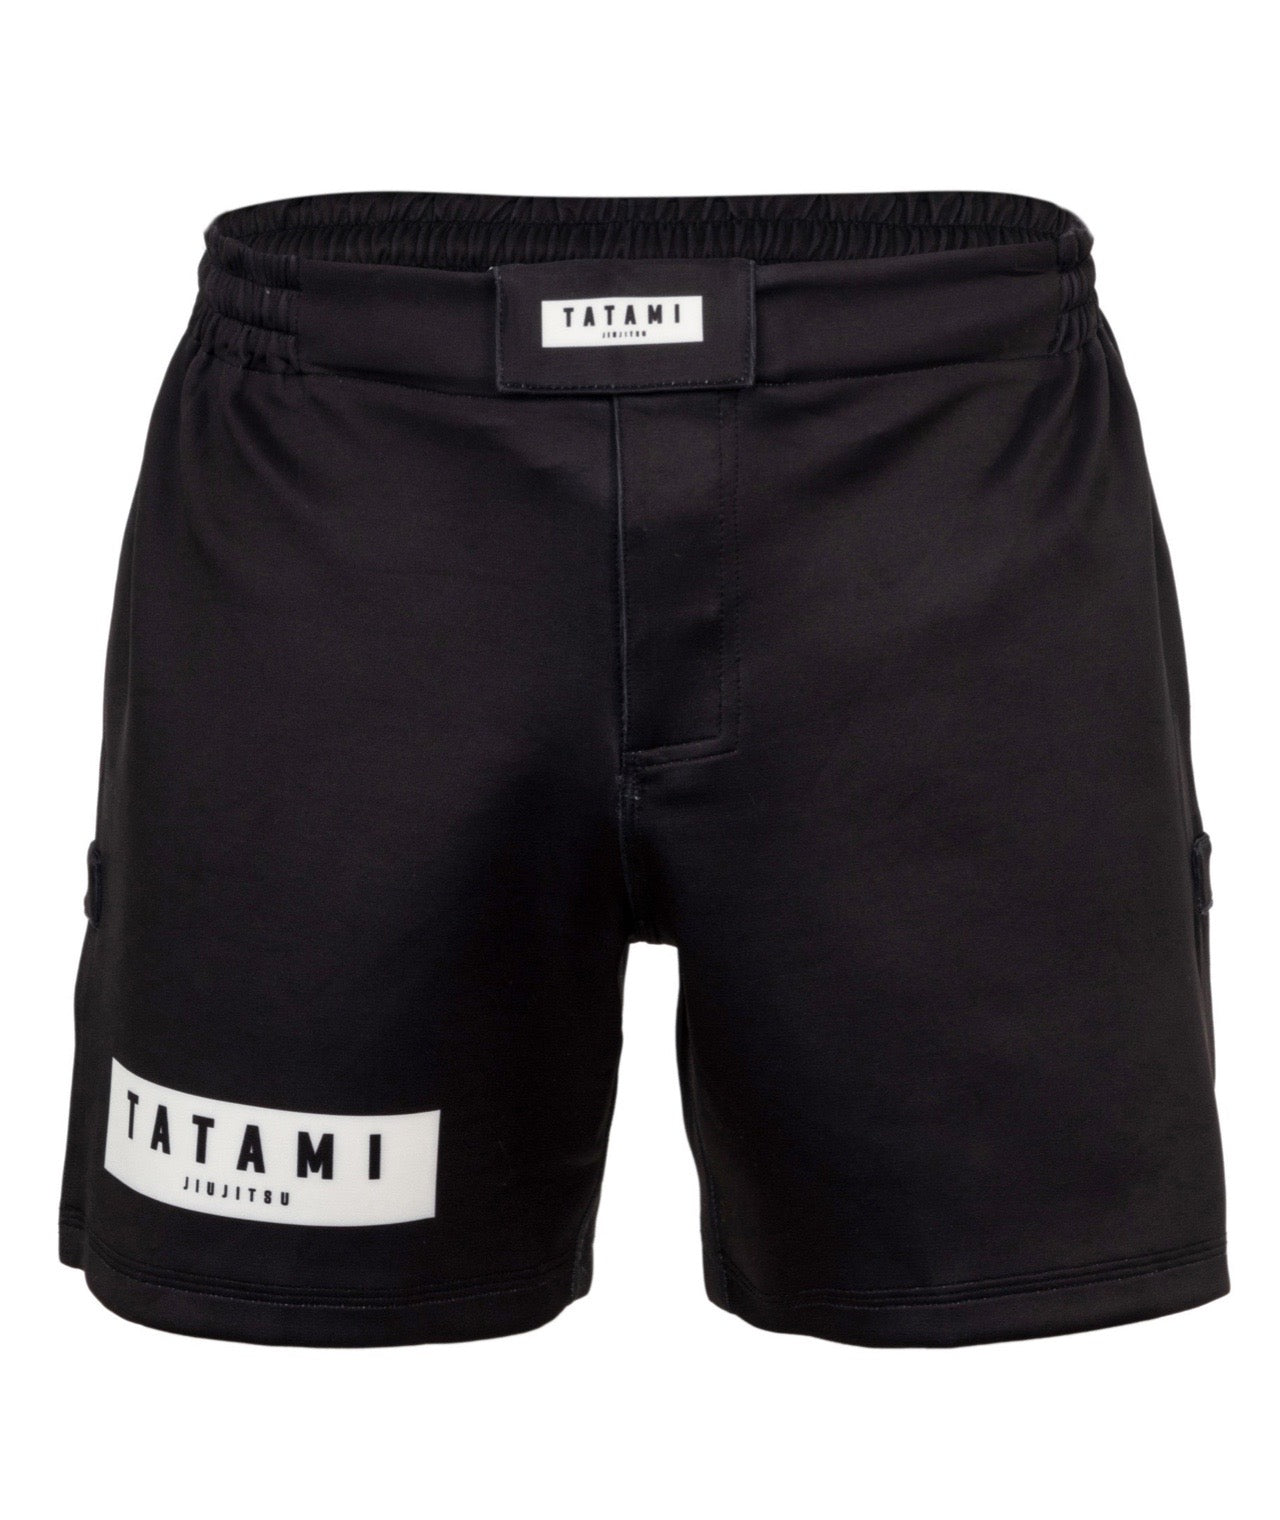 Athlete High Cut Shorts - Black – Tatami Fightwear USA